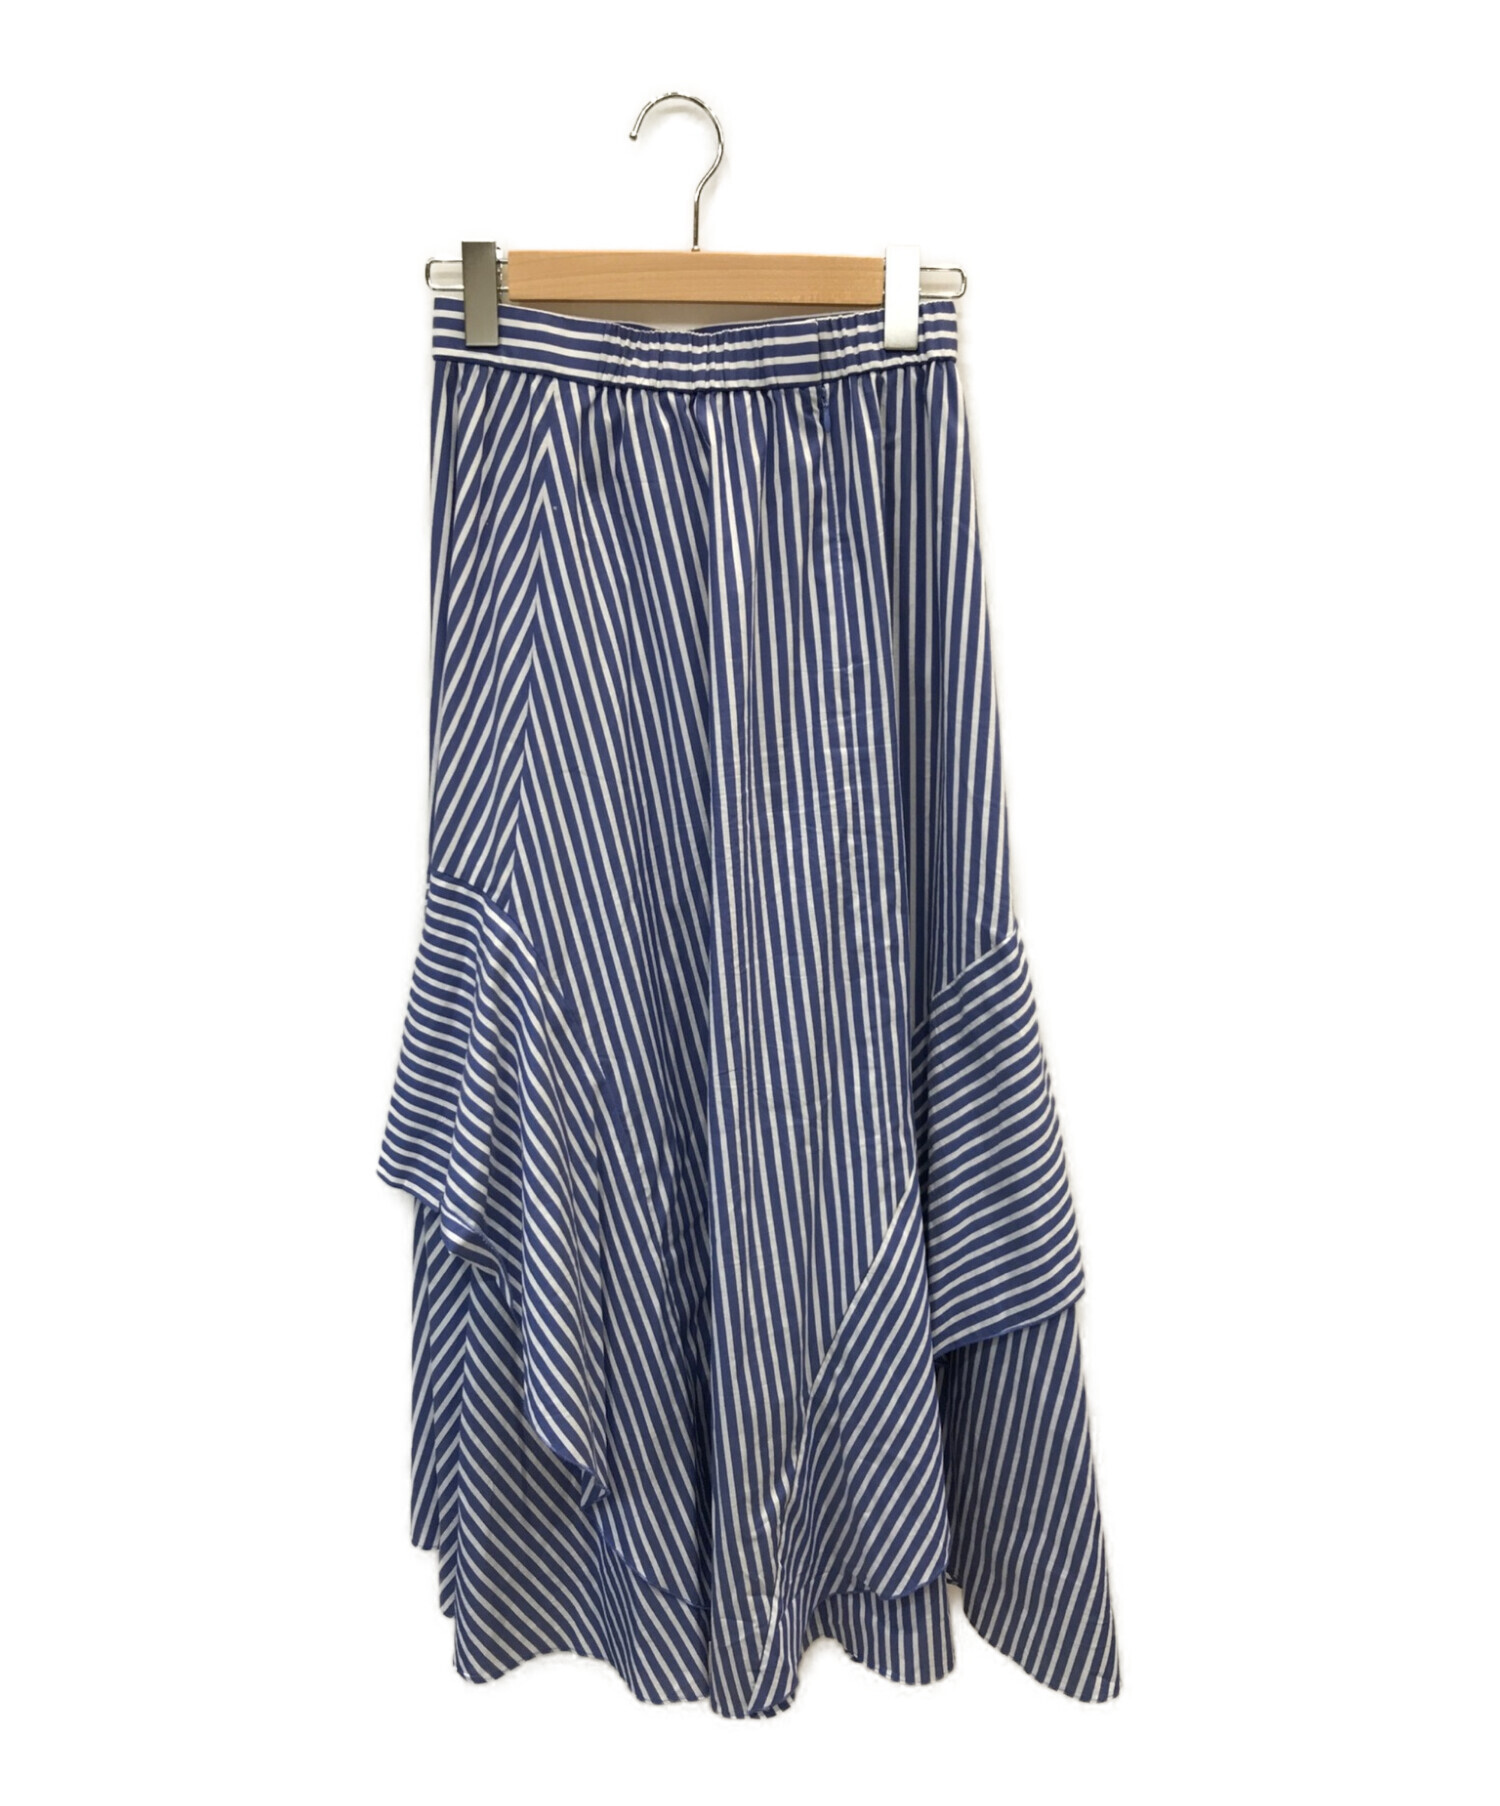 PLST (プラステ) ラッフルタイプライタースカート ブルー サイズ:M